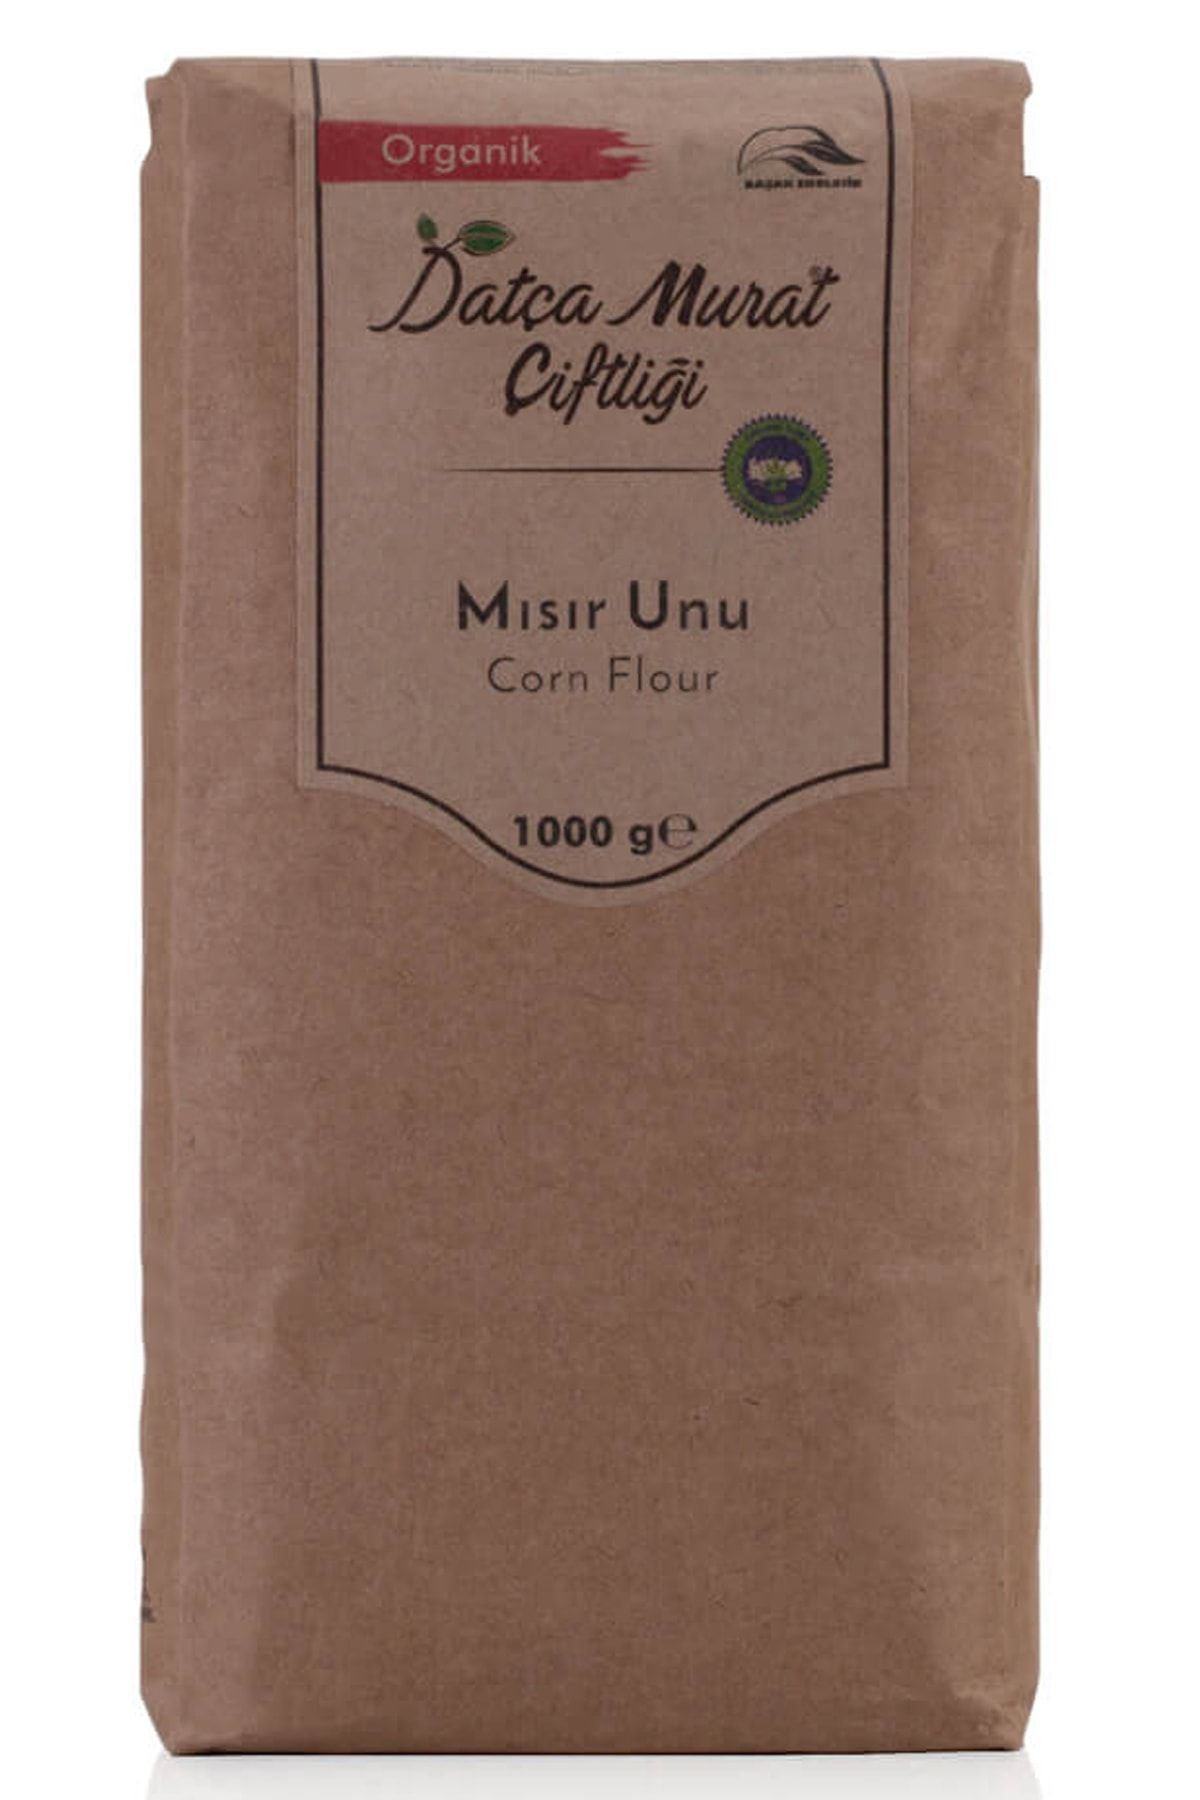 Datça Murat Çiftliği Organik Mısır Unu 1 Kg Corn Flour 1000 gr